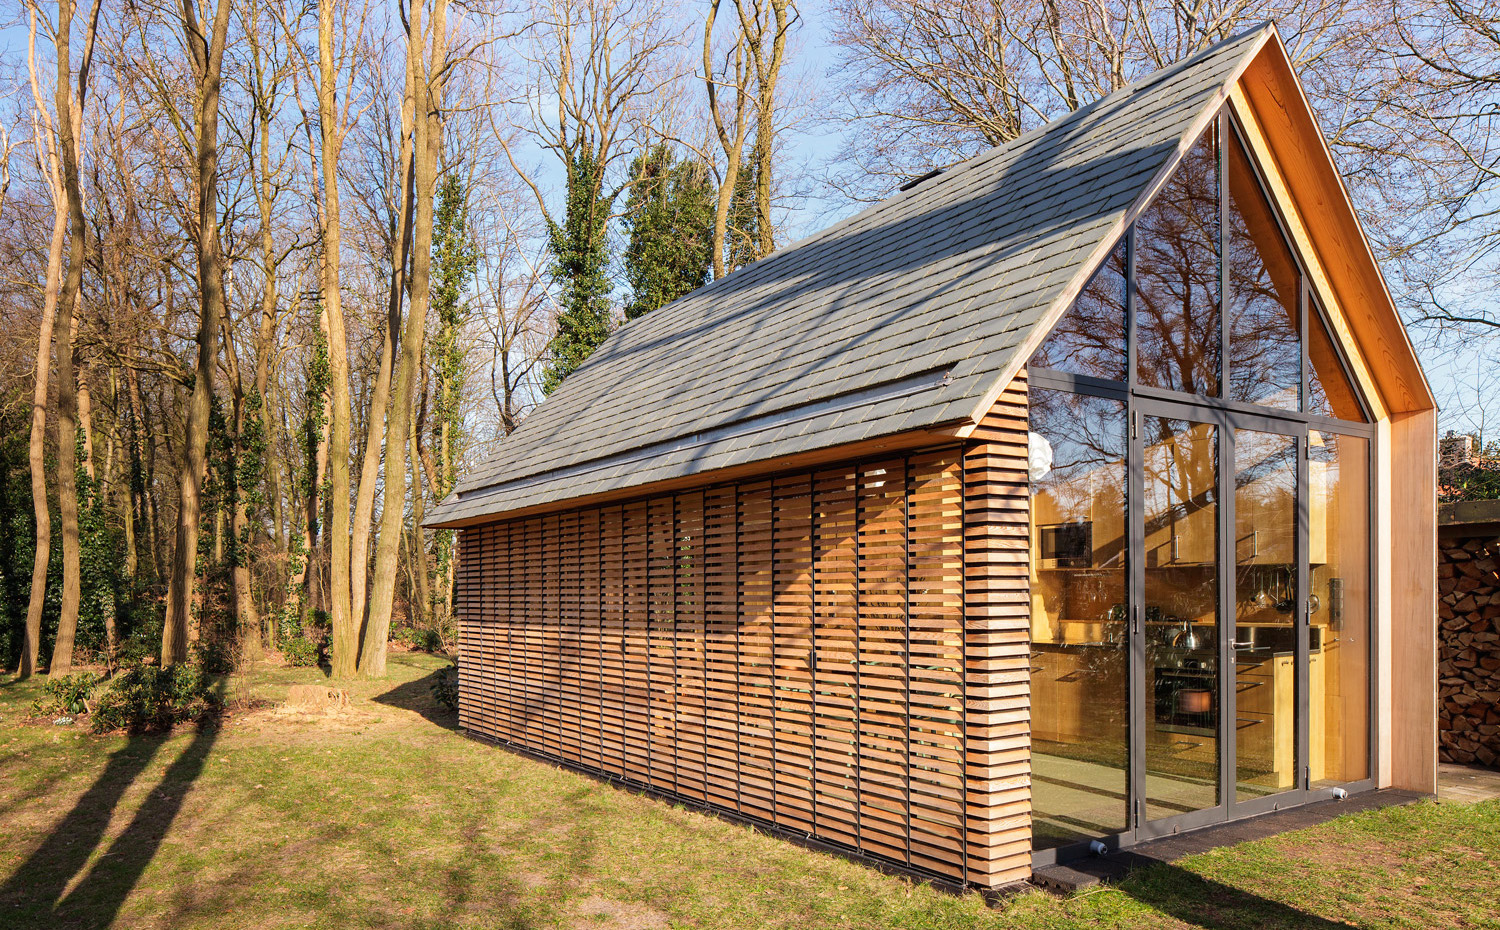 SP2015-Zecc-Tuinhuis-6-HiRes. La madera utilizada para el revestimiento y para las persianas es de cedro rojo y proviene de los bosques cercanos